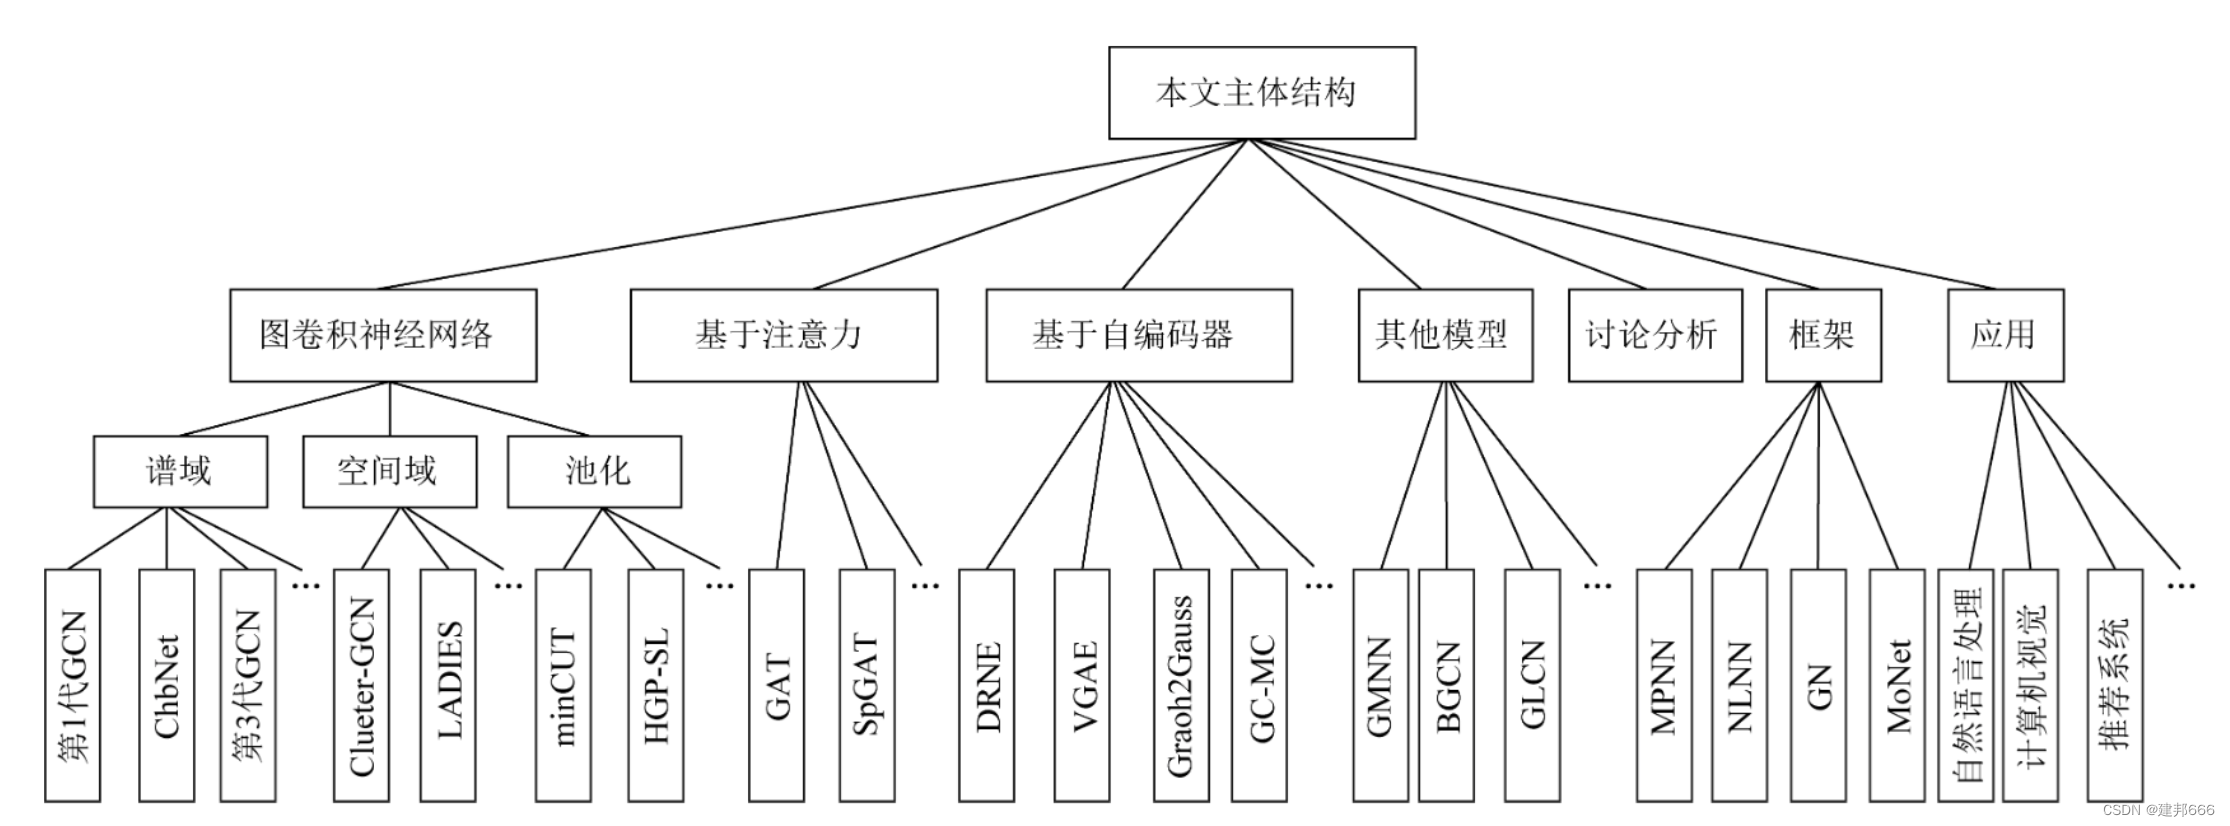 图4 图神经网络分类